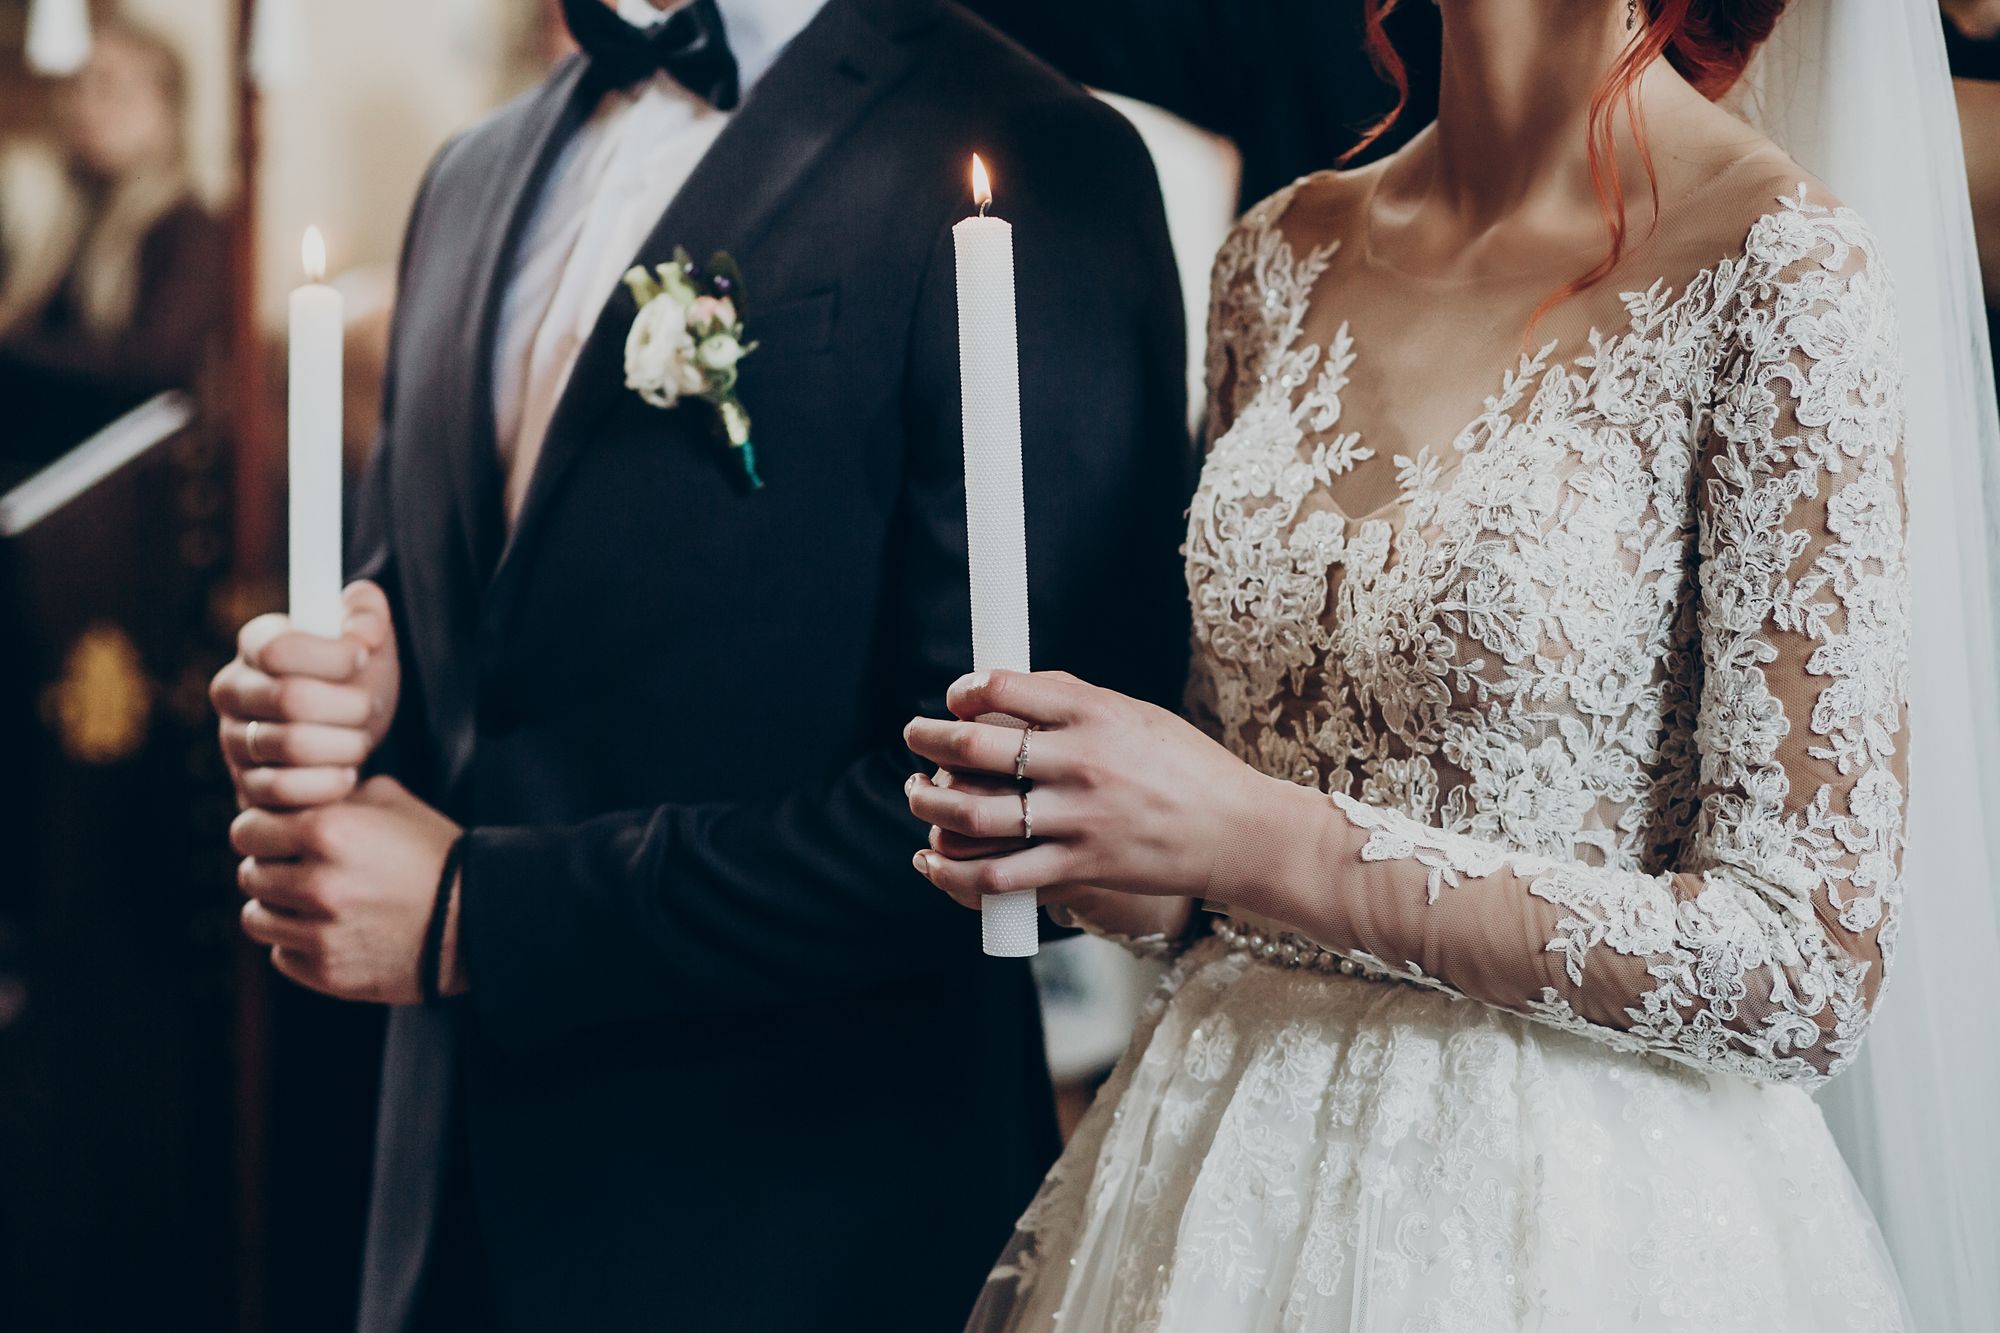 Das Hochzeits Outfit des Bräutigams sollte bestens zu dem seiner Braut passen.